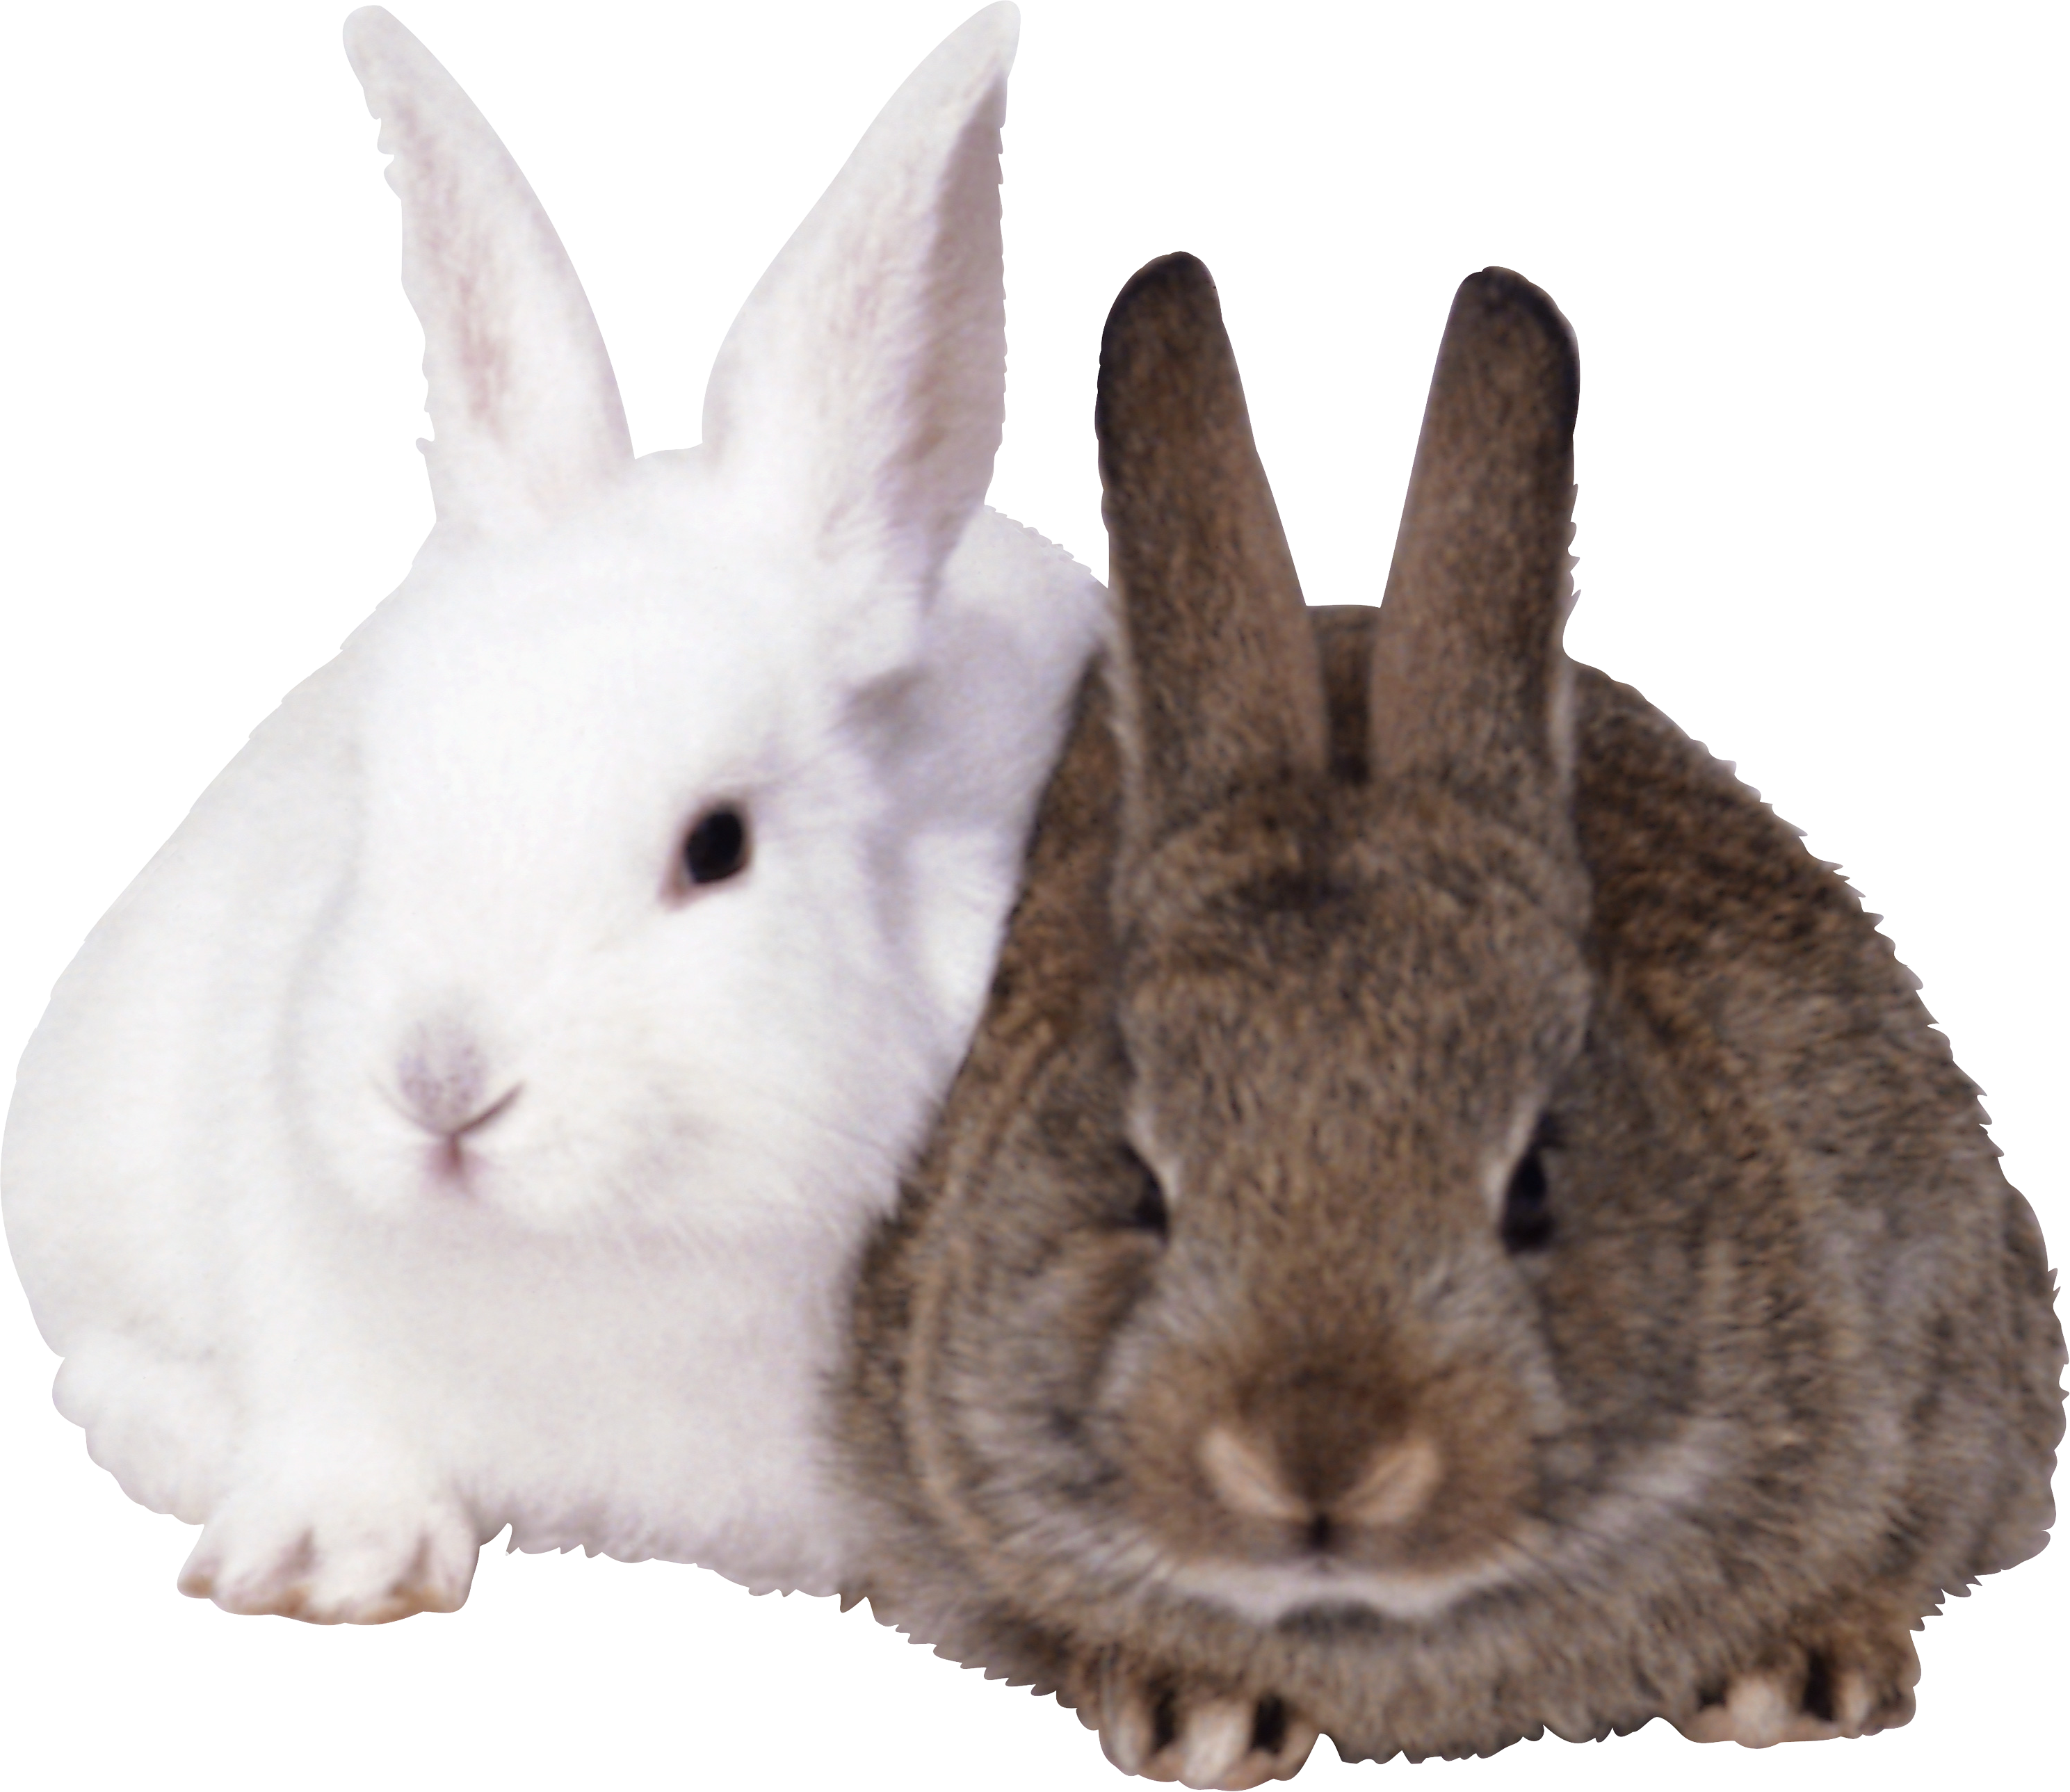 Rabbit Species